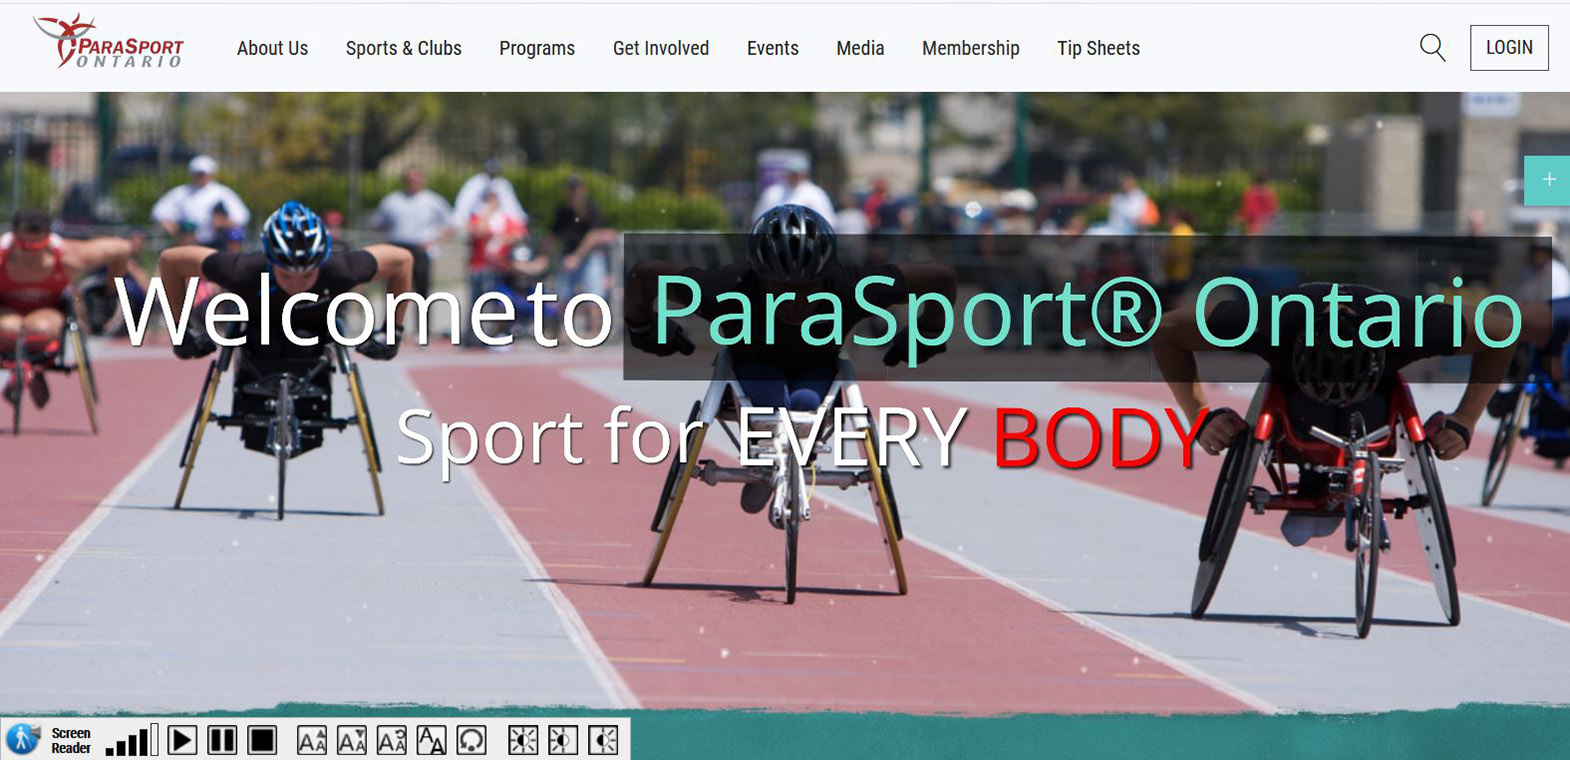 Parasport Ontario